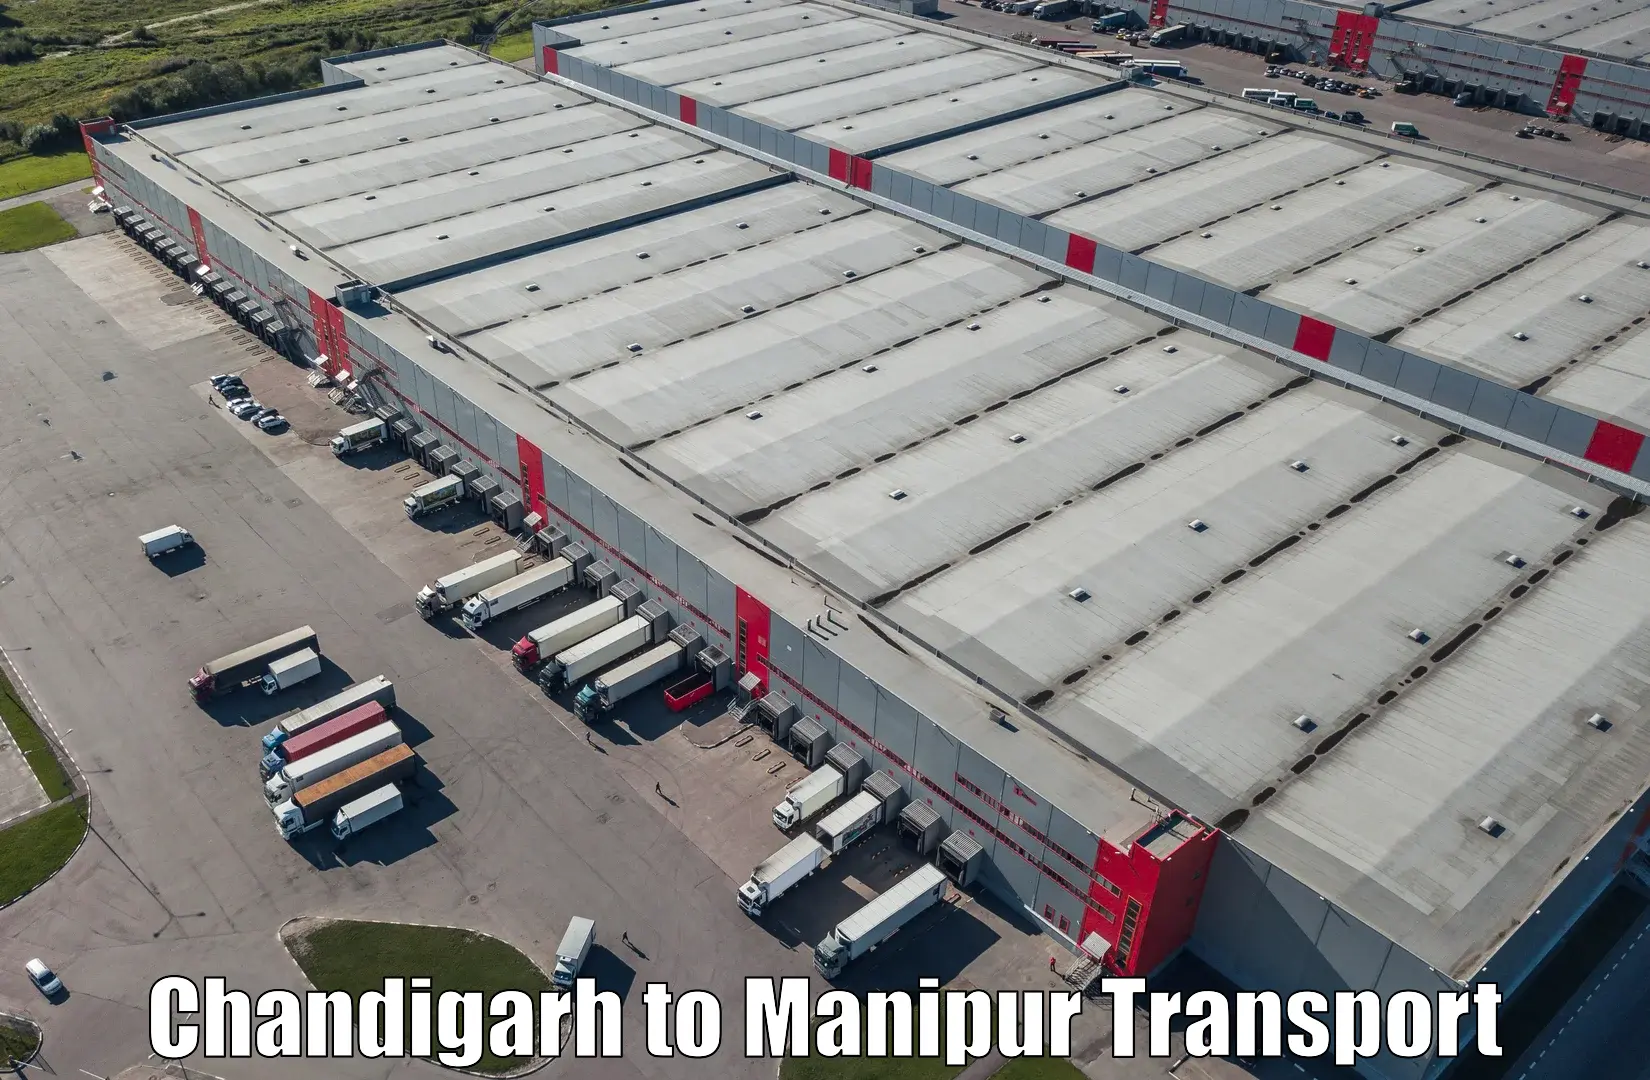 Delivery service Chandigarh to Churachandpur